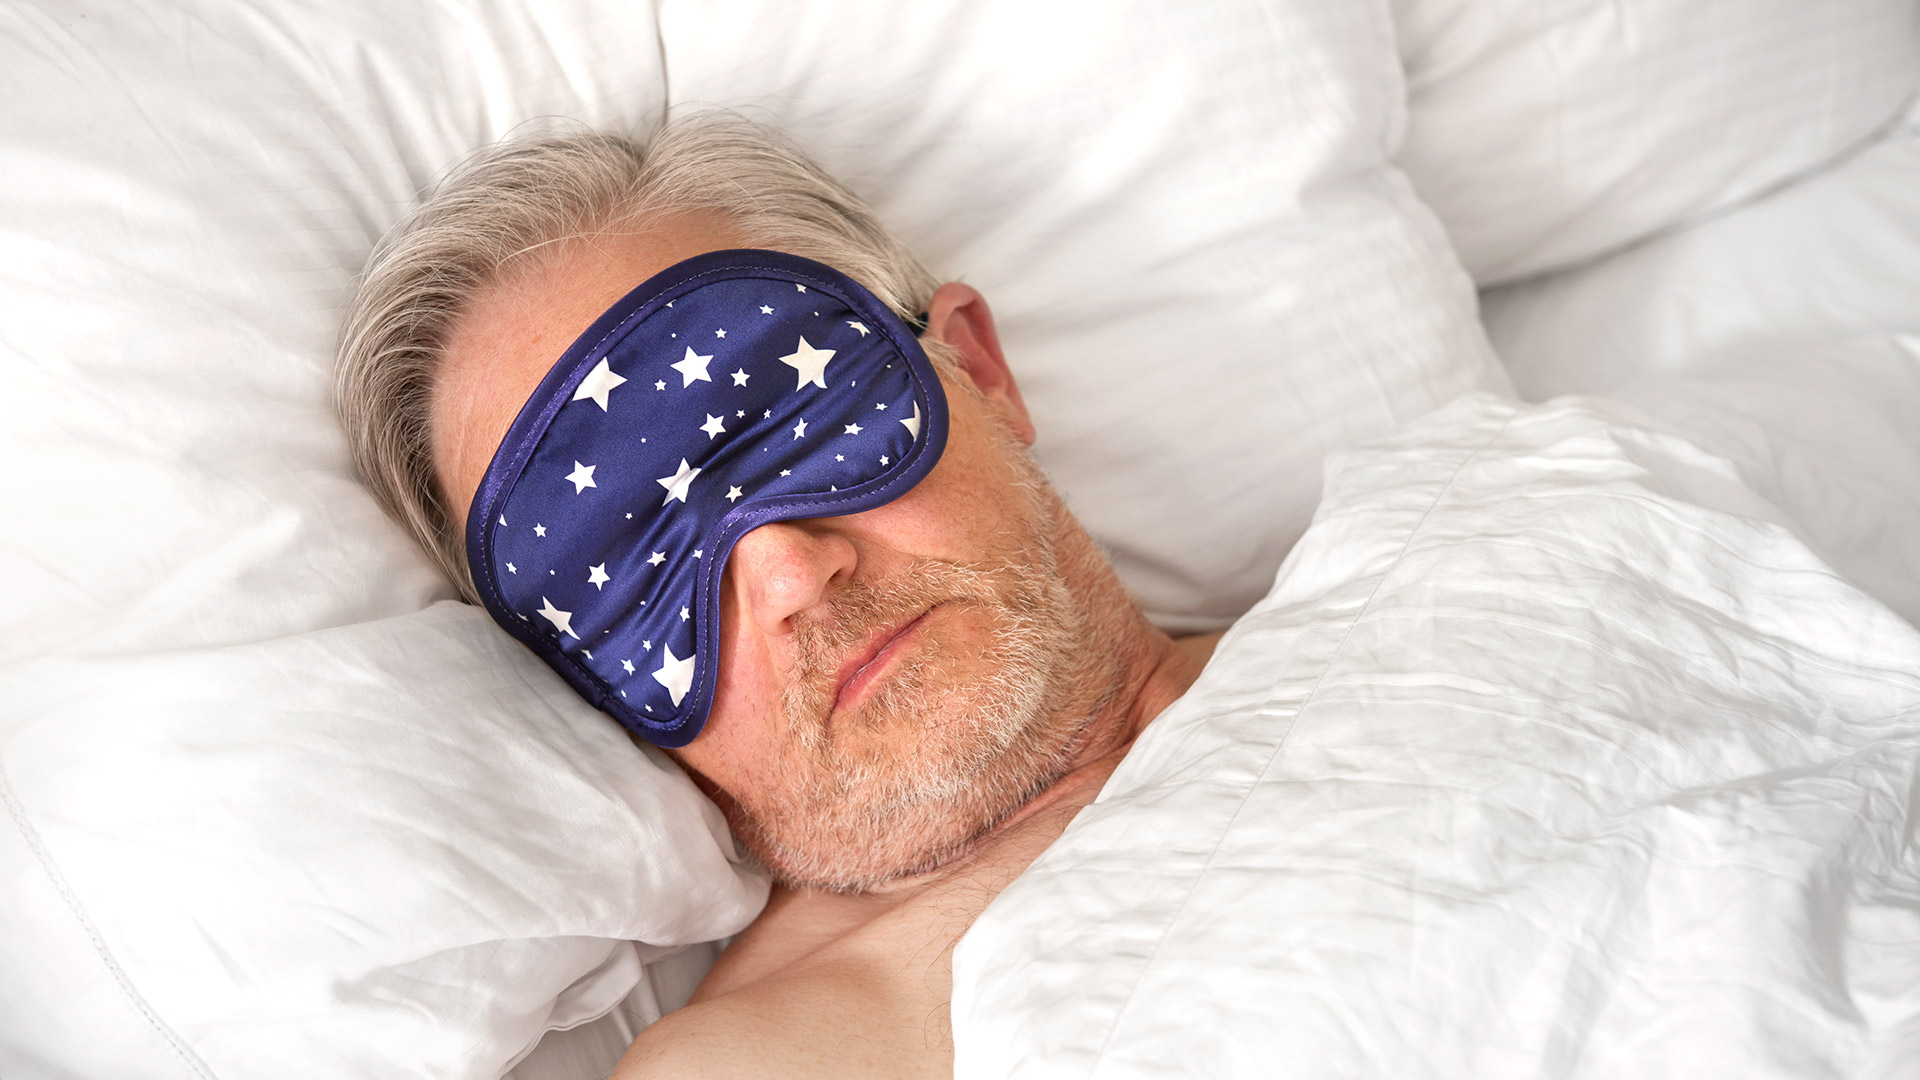 La guía oficial del Servicio Nacional de Salud del Reino Unido establece que la mayoría de los adultos necesitan entre seis y nueve horas de sueño cada noche